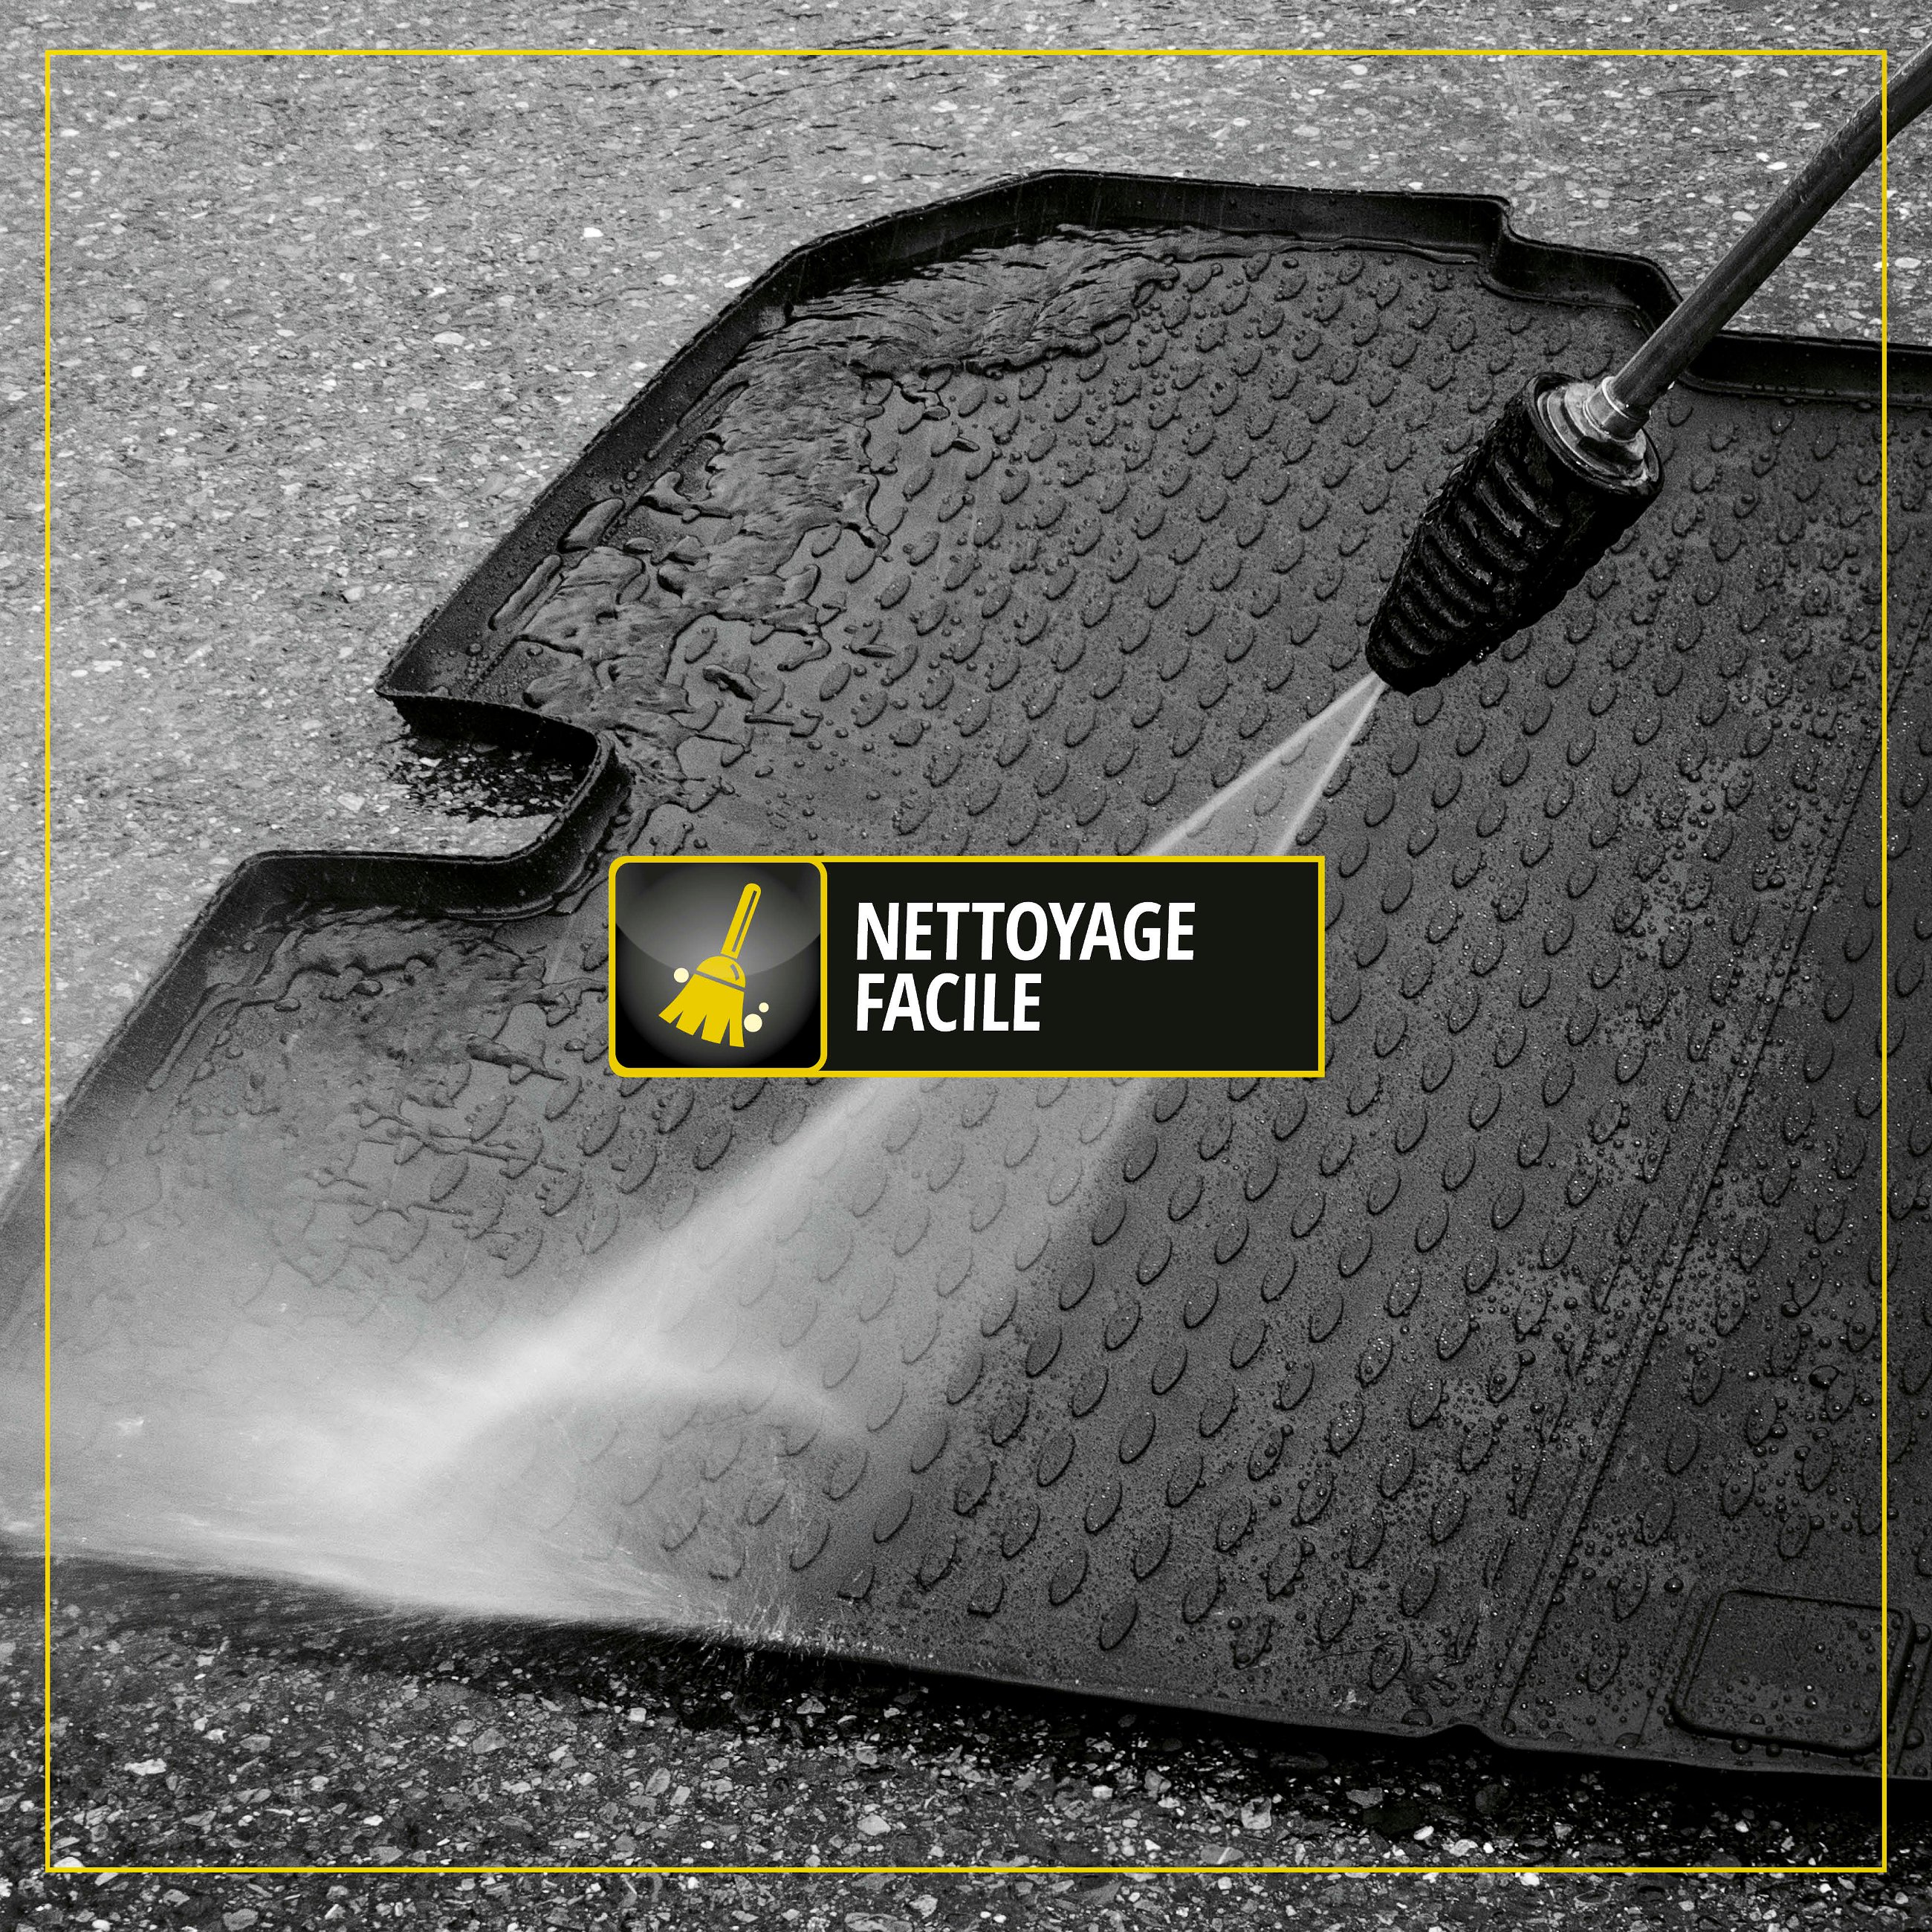 Bac de Coffre XTR pour Renault Captur I hatchback (J5, H5) 06/2013- 2019, plancher de chargement supérieur